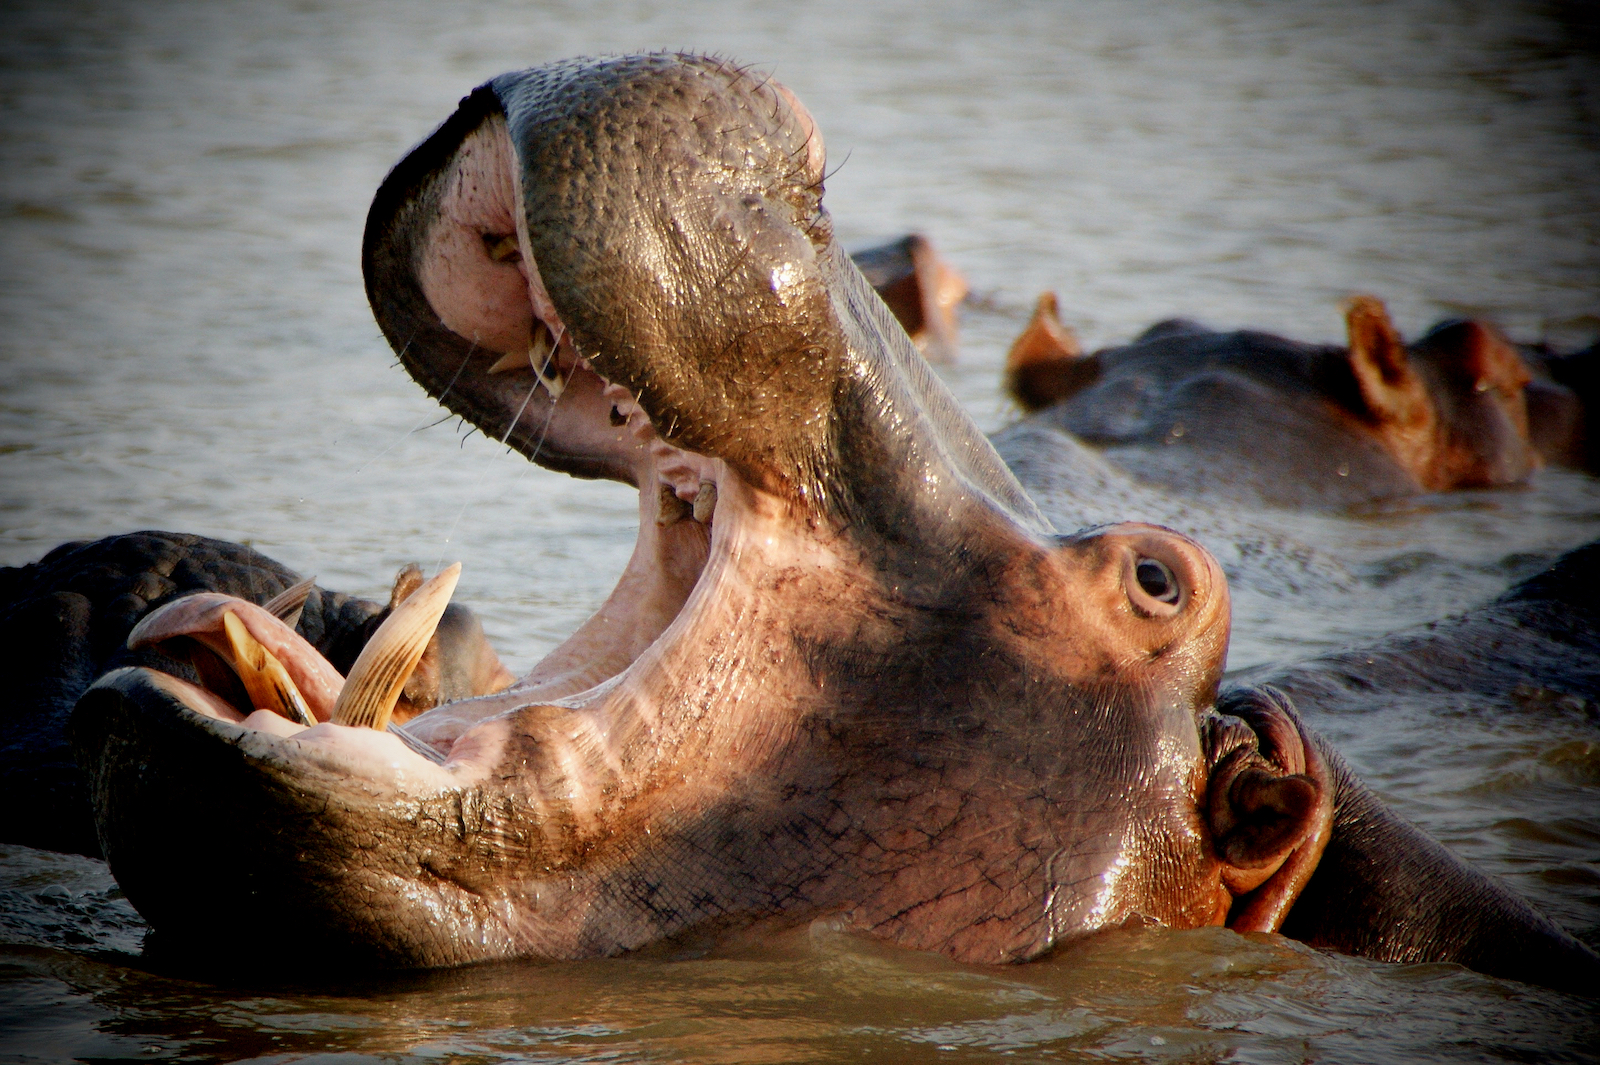 Hippo at Lower Zambezi, Zambia